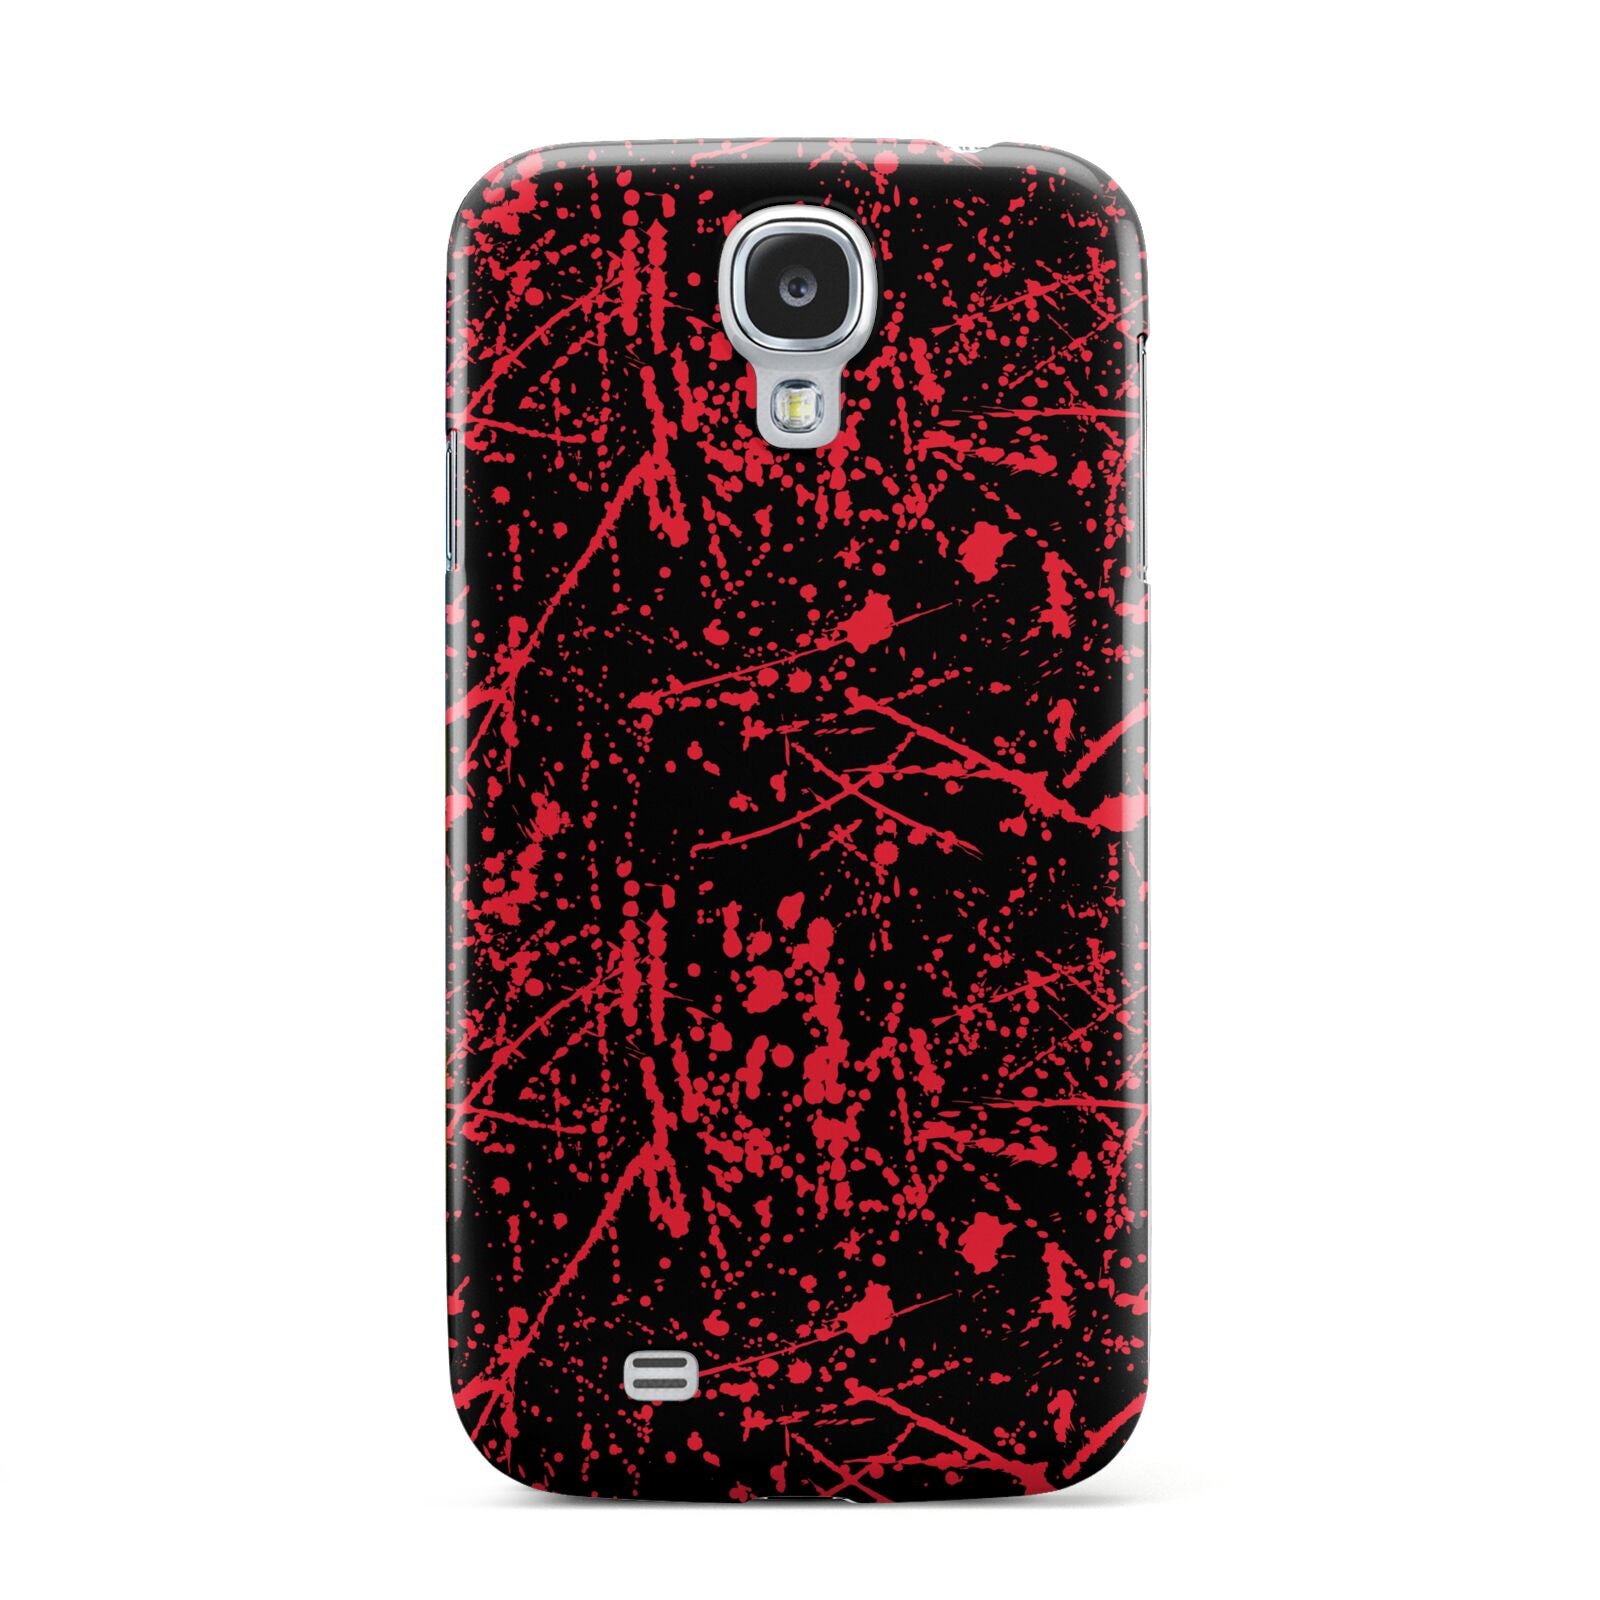 Blood Splatters Samsung Galaxy S4 Case